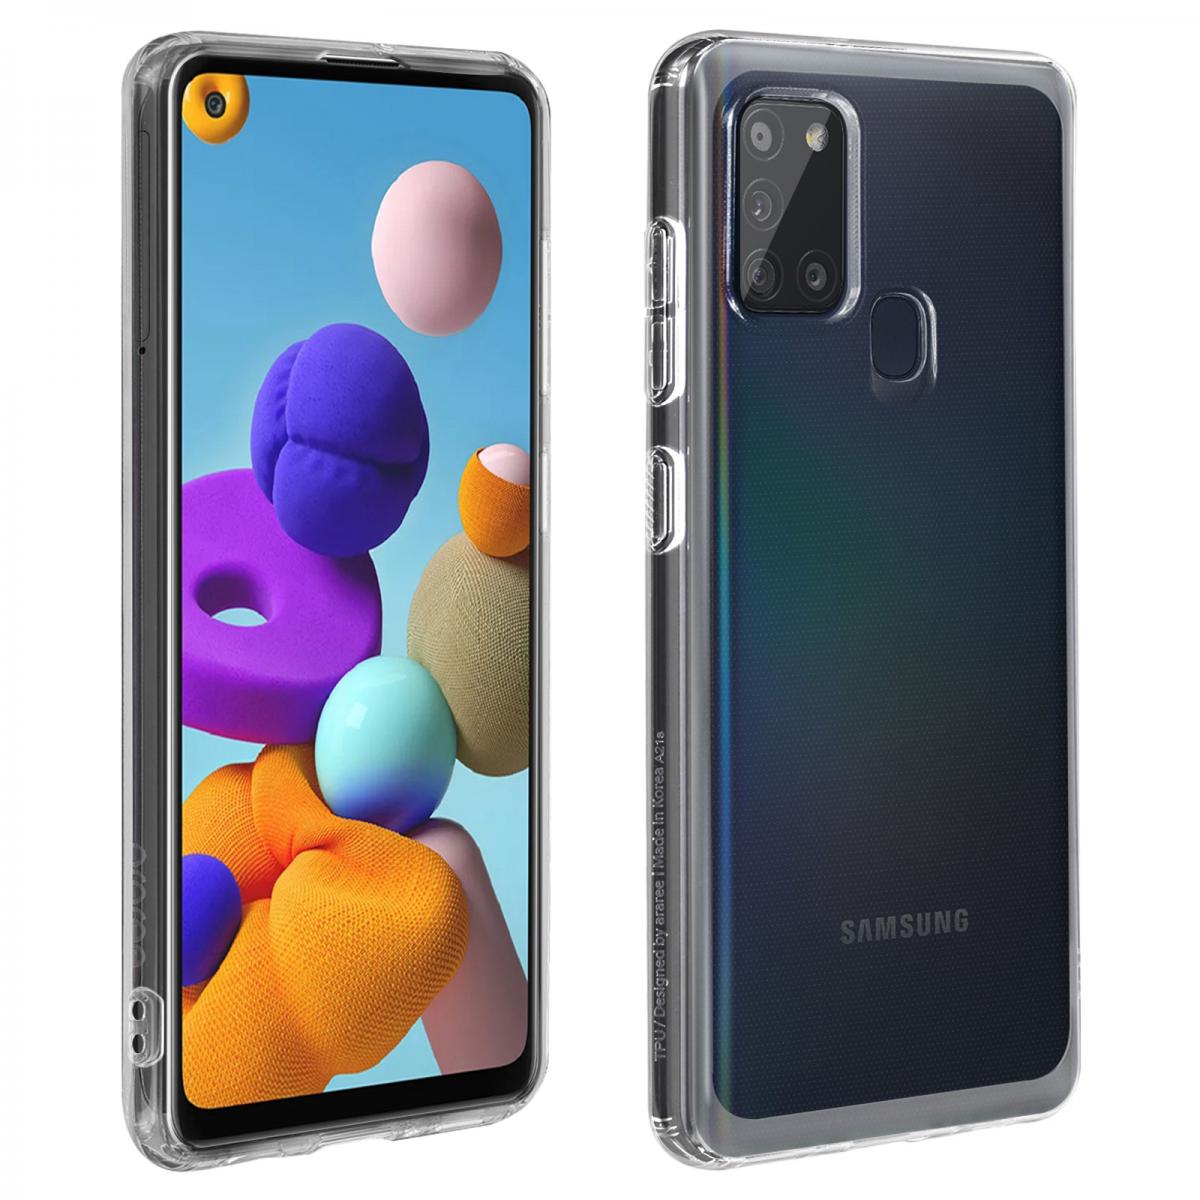 Samsung - Coque Galaxy A21s Protection Rigide Ultrafine Légère Original Transparent - Coque, étui smartphone